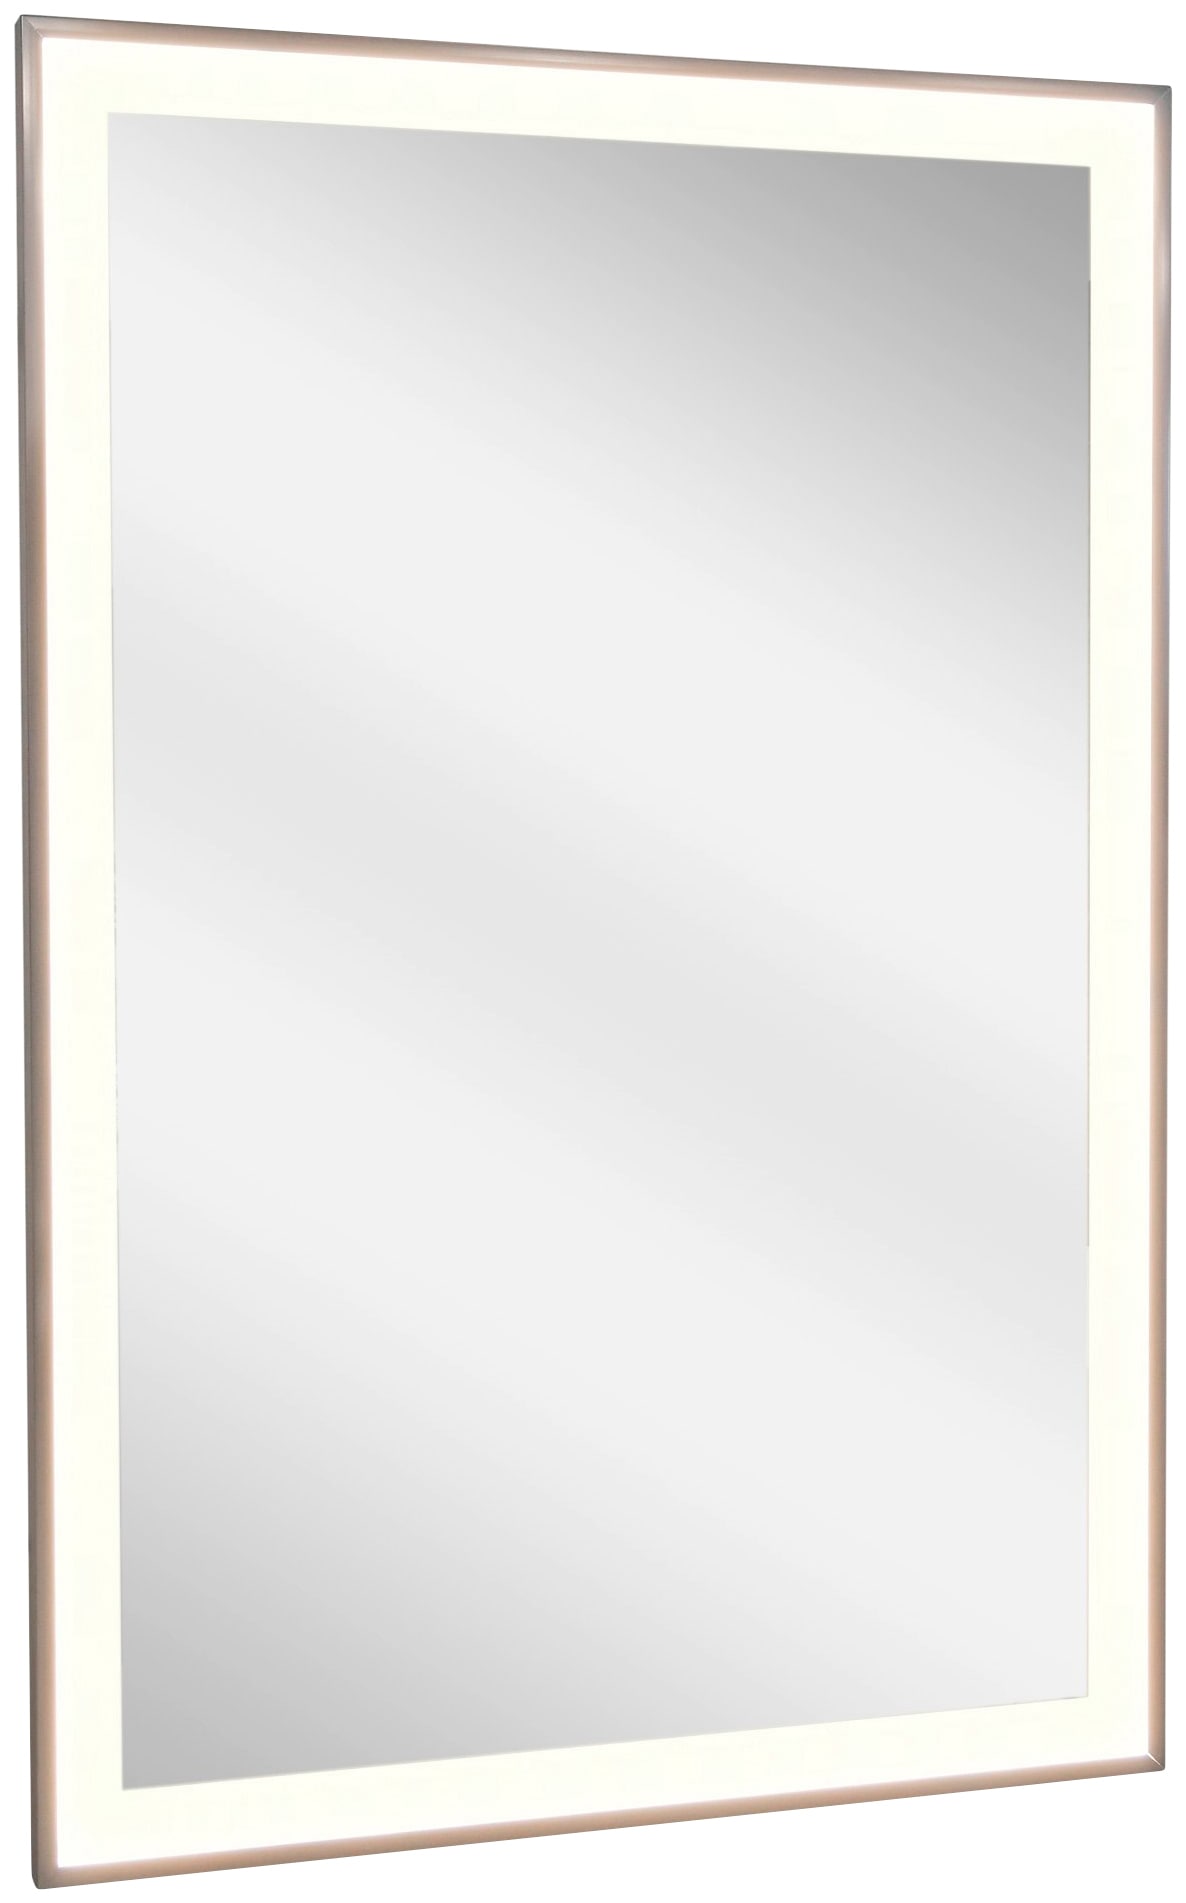 Vasner Spiegel-Infrarotheizung Zipris S LED mit Licht 600 W 60 cm x 110 cm Titan